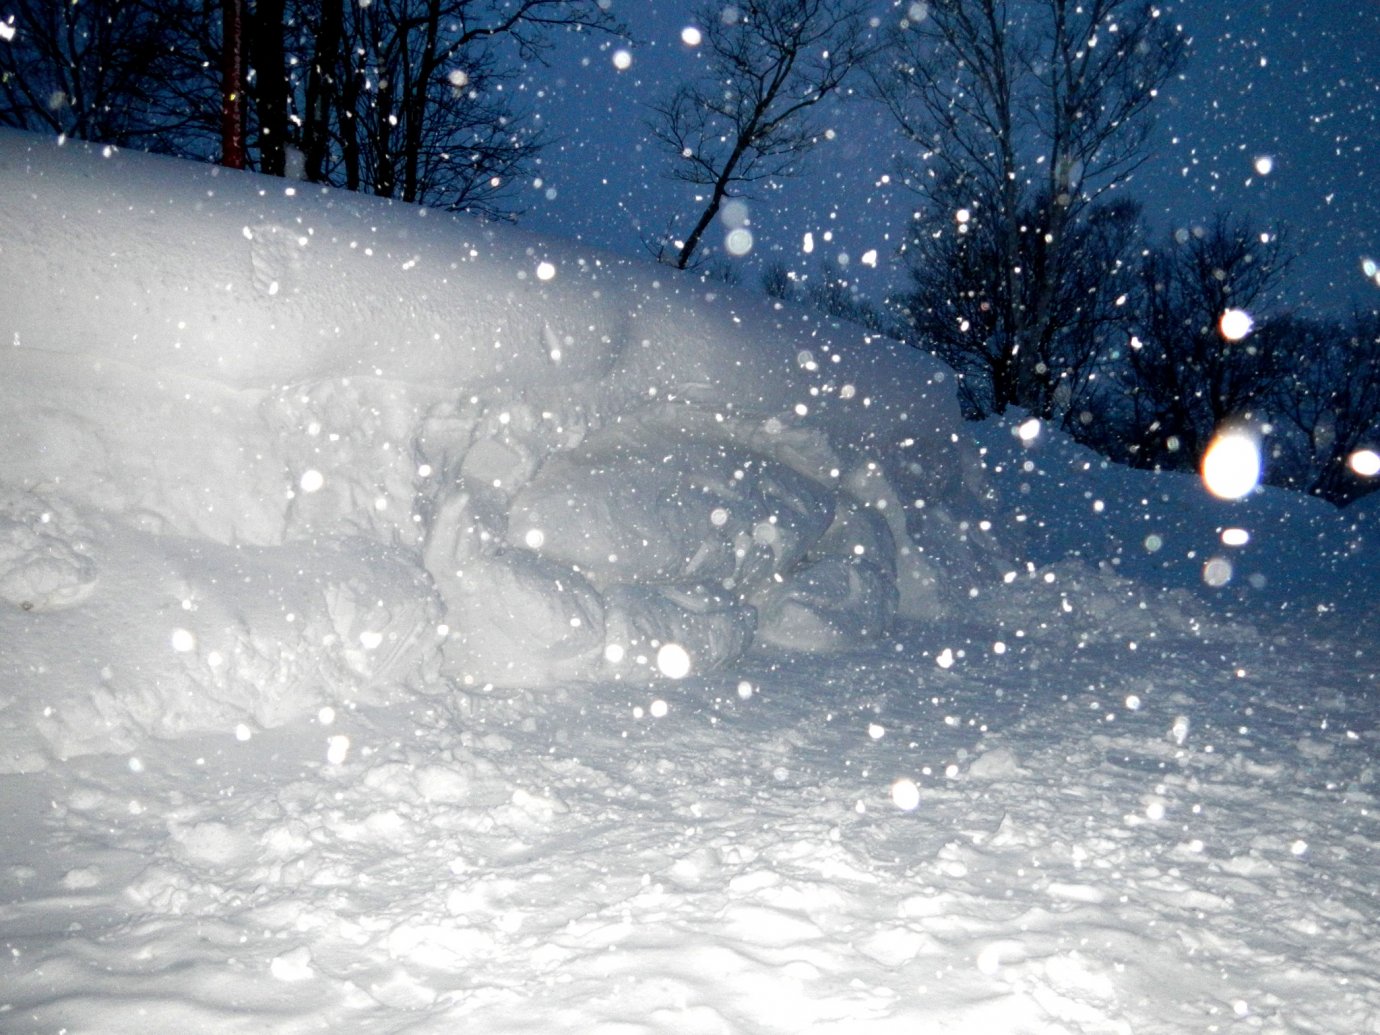 ニセコの雪壁でユノハナガニを掘り当てました